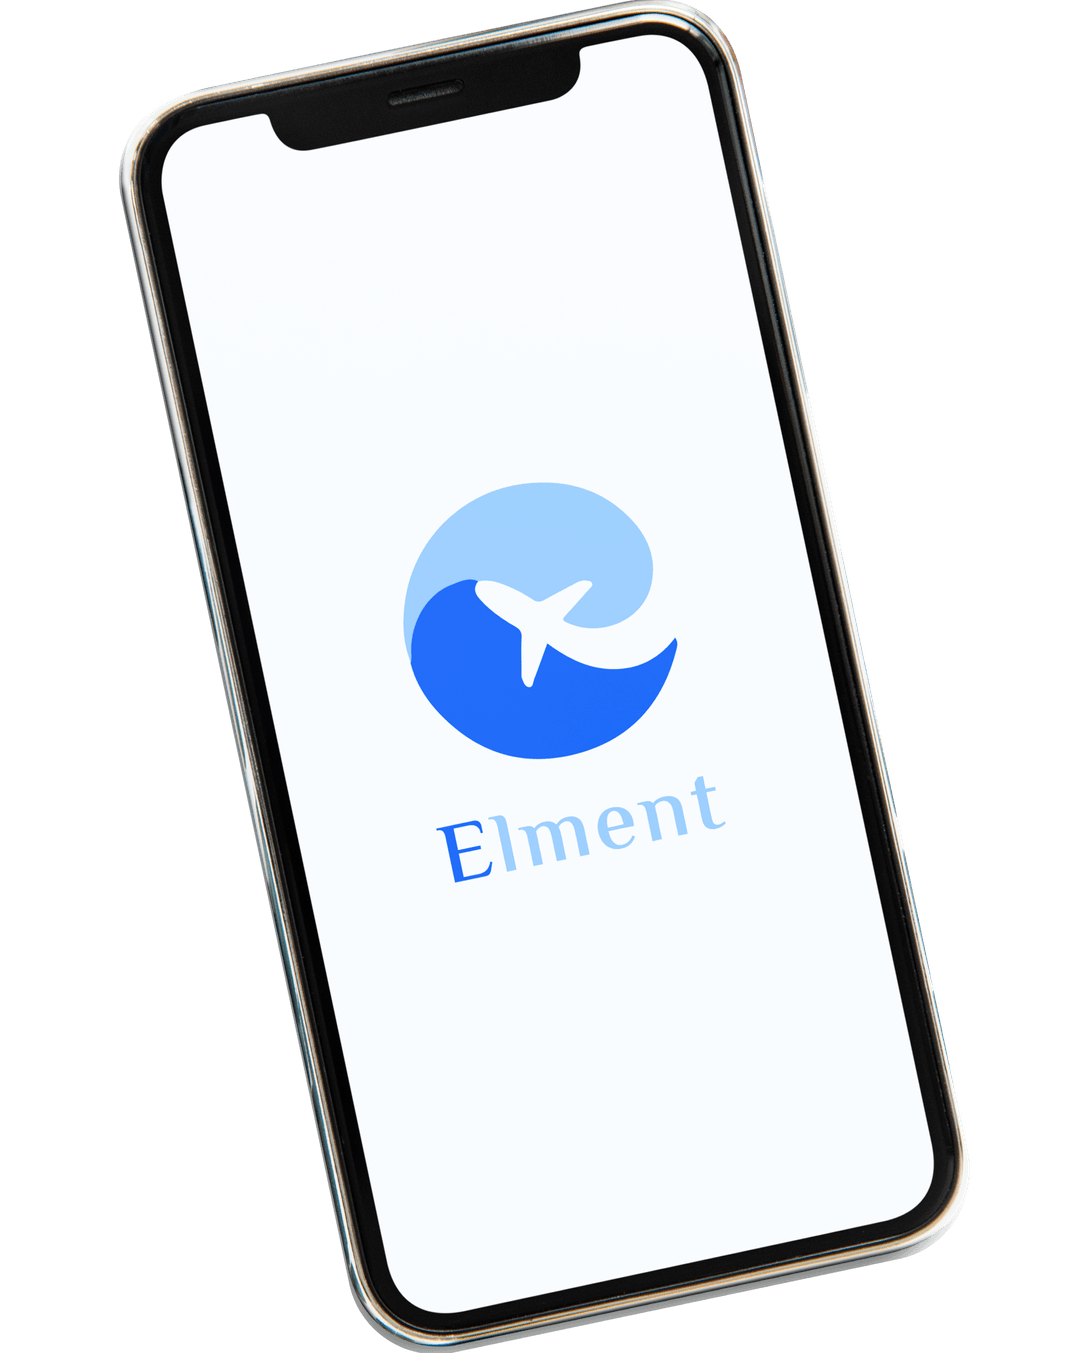 Elment - App